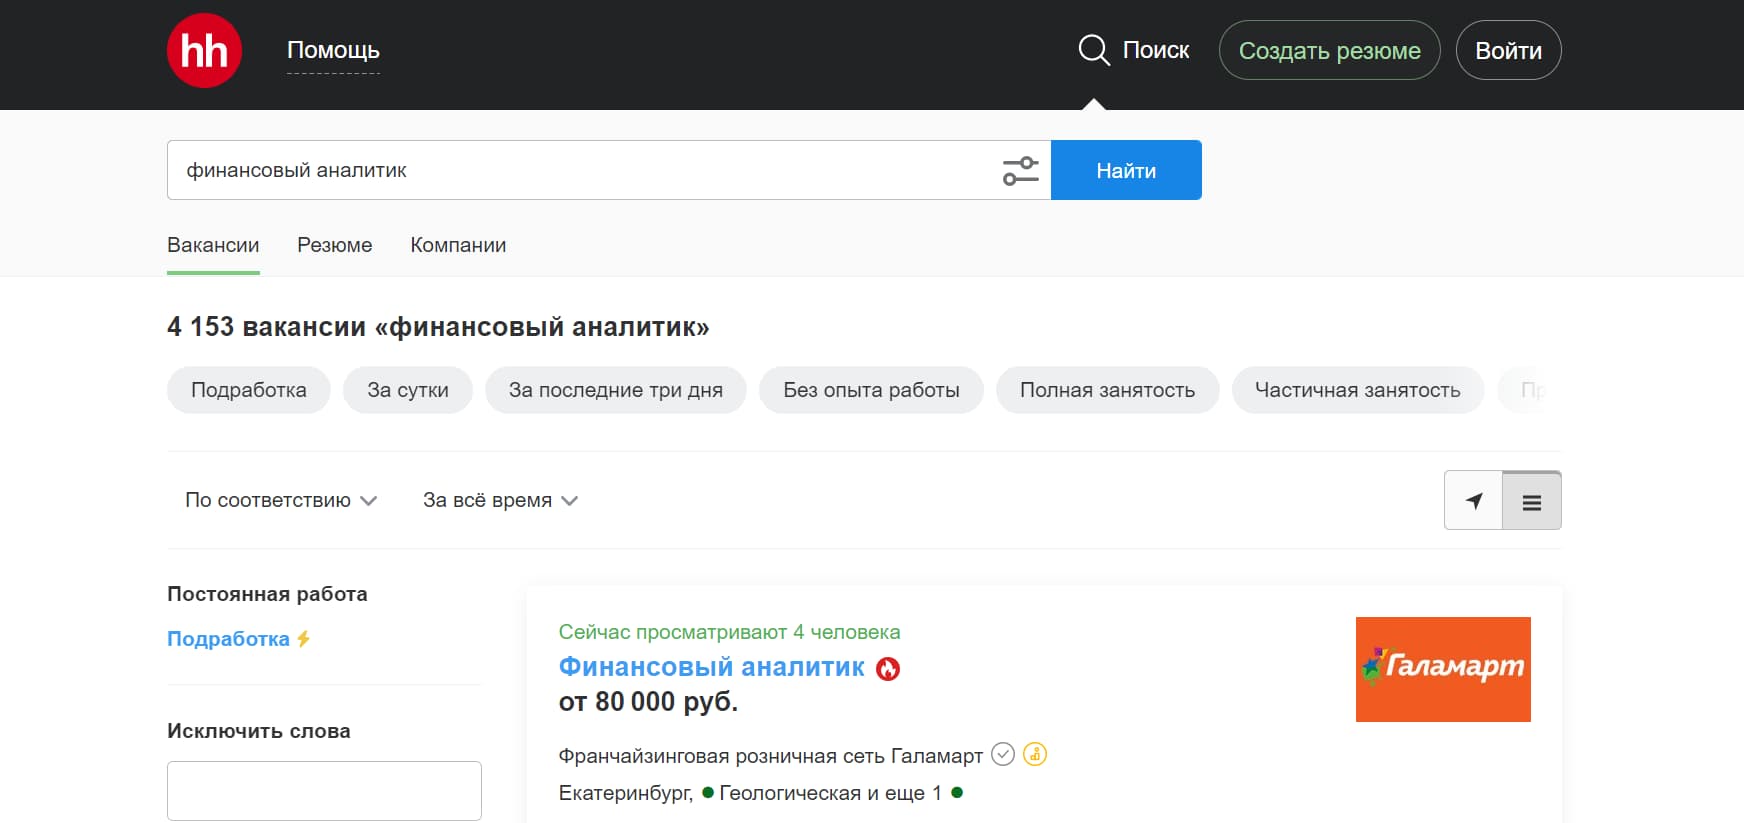 На сайте hh.ru размещено более 4000 вакансий по запросу «финансовый аналитик»: